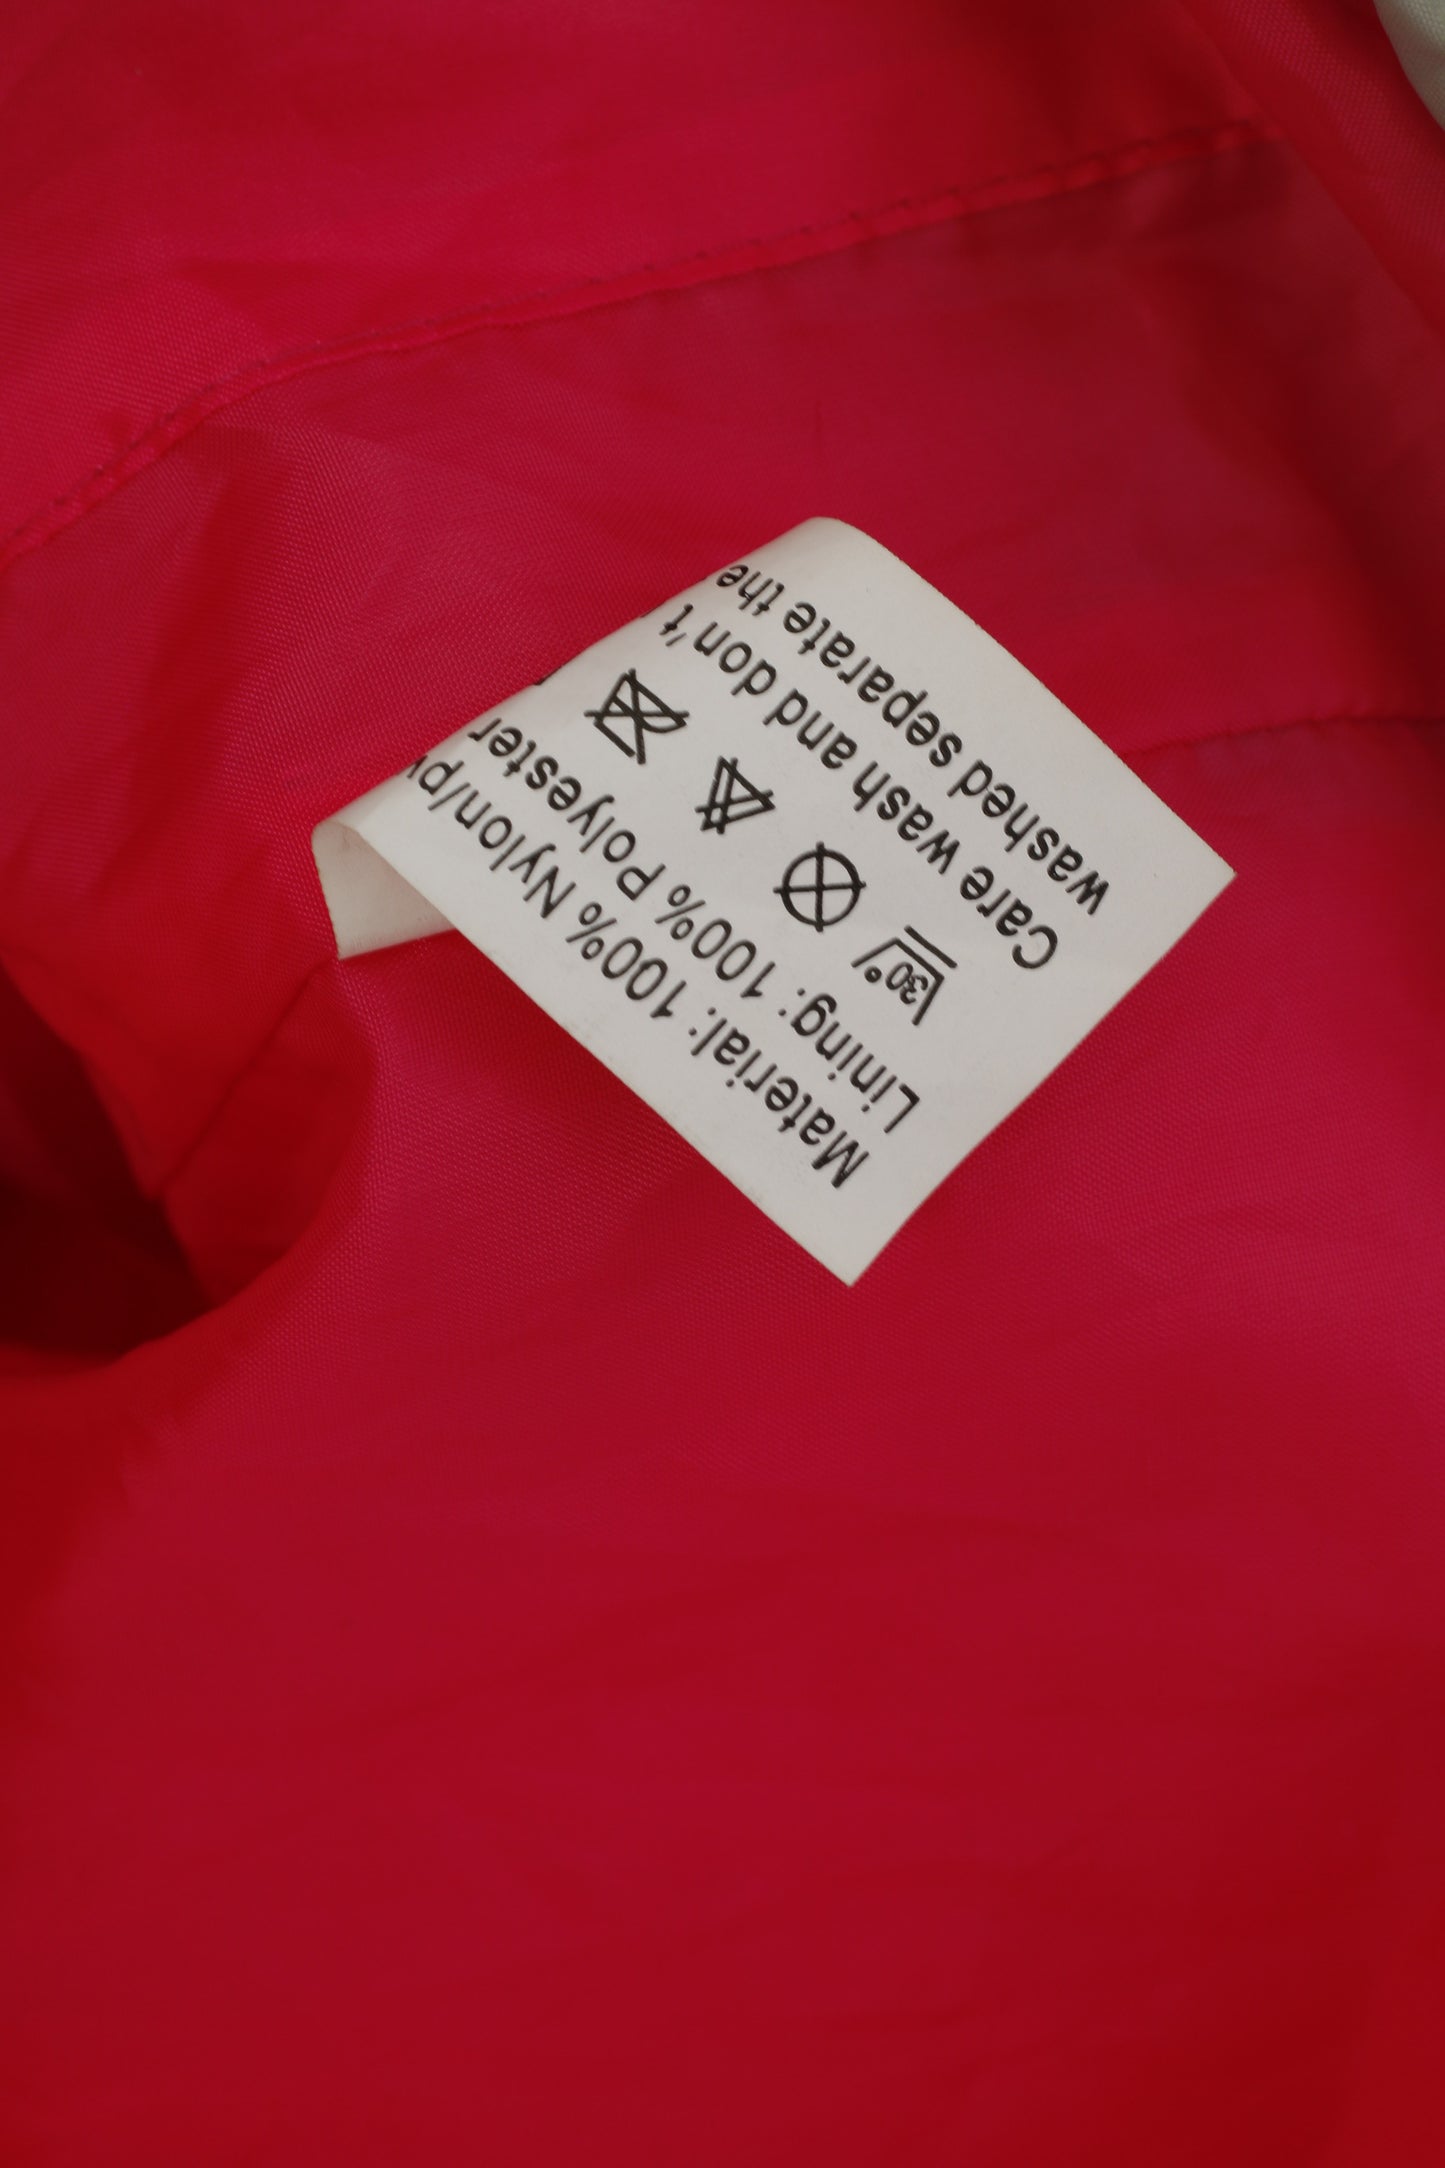 NICO Sportswear Giacca XL da uomo in nylon rosa impermeabile estrema 3000 mm con cerniera superiore